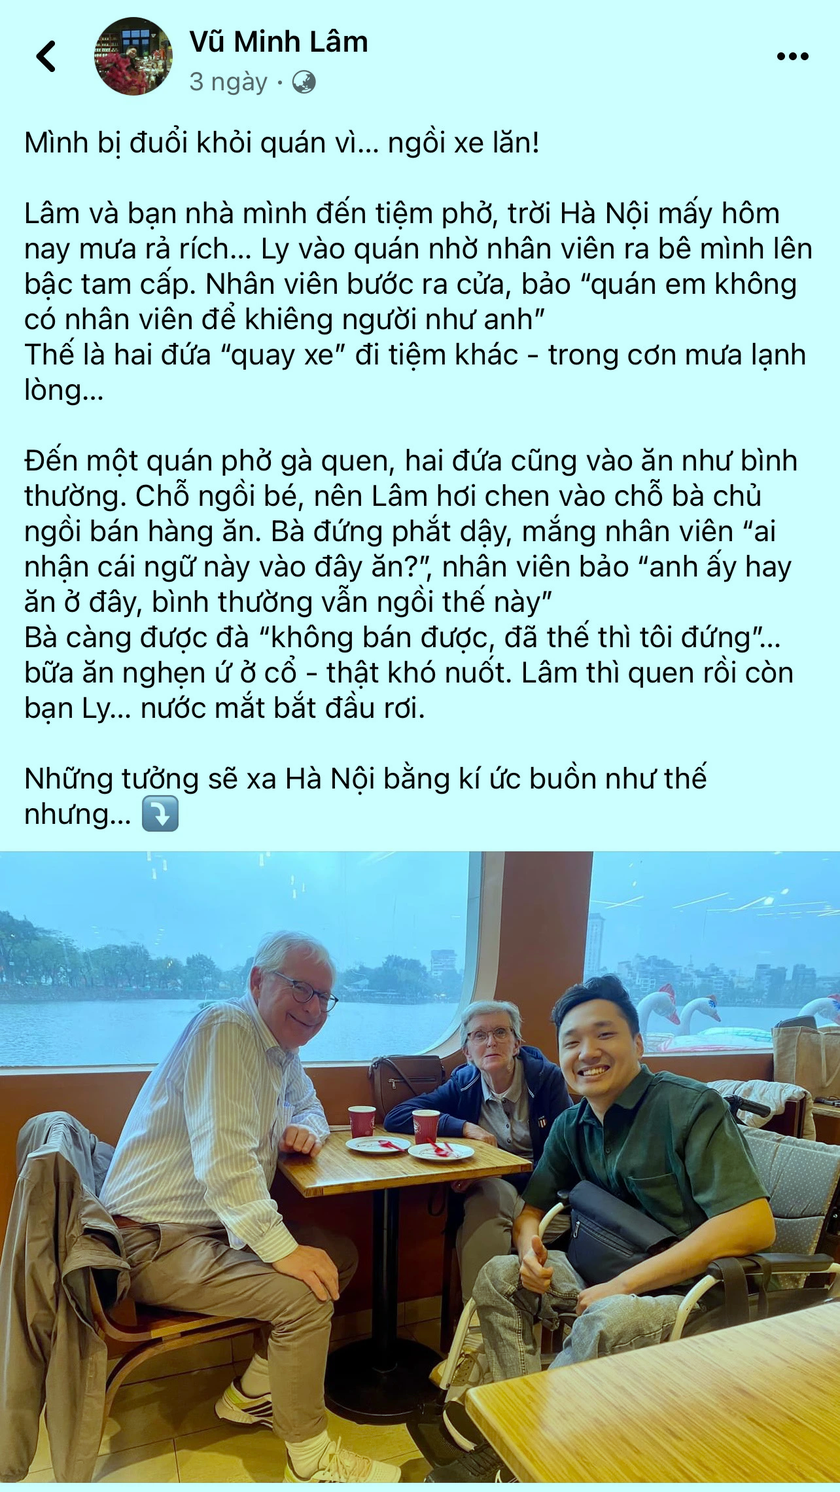 Cộng đồng mạng nghi ngờ tính xác thực khi TikToker Vũ Minh Lâm "tố" bị đuổi khỏi quán ở Hà Nội vì ngồi xe lăn- Ảnh 1.